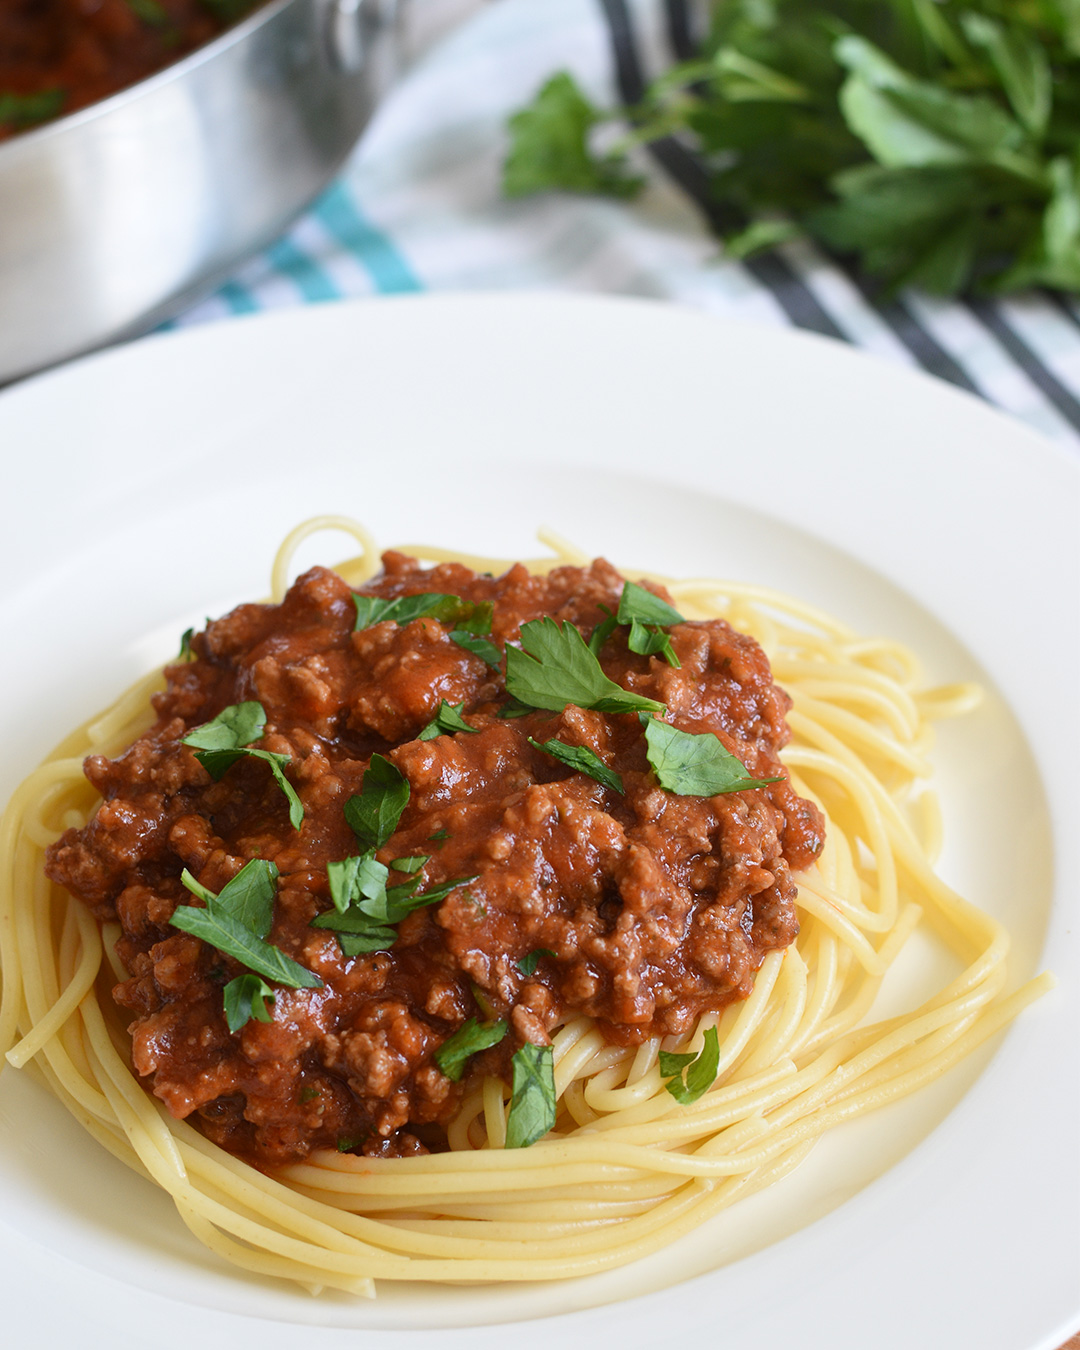 homemade spaghetti sauce on pasta